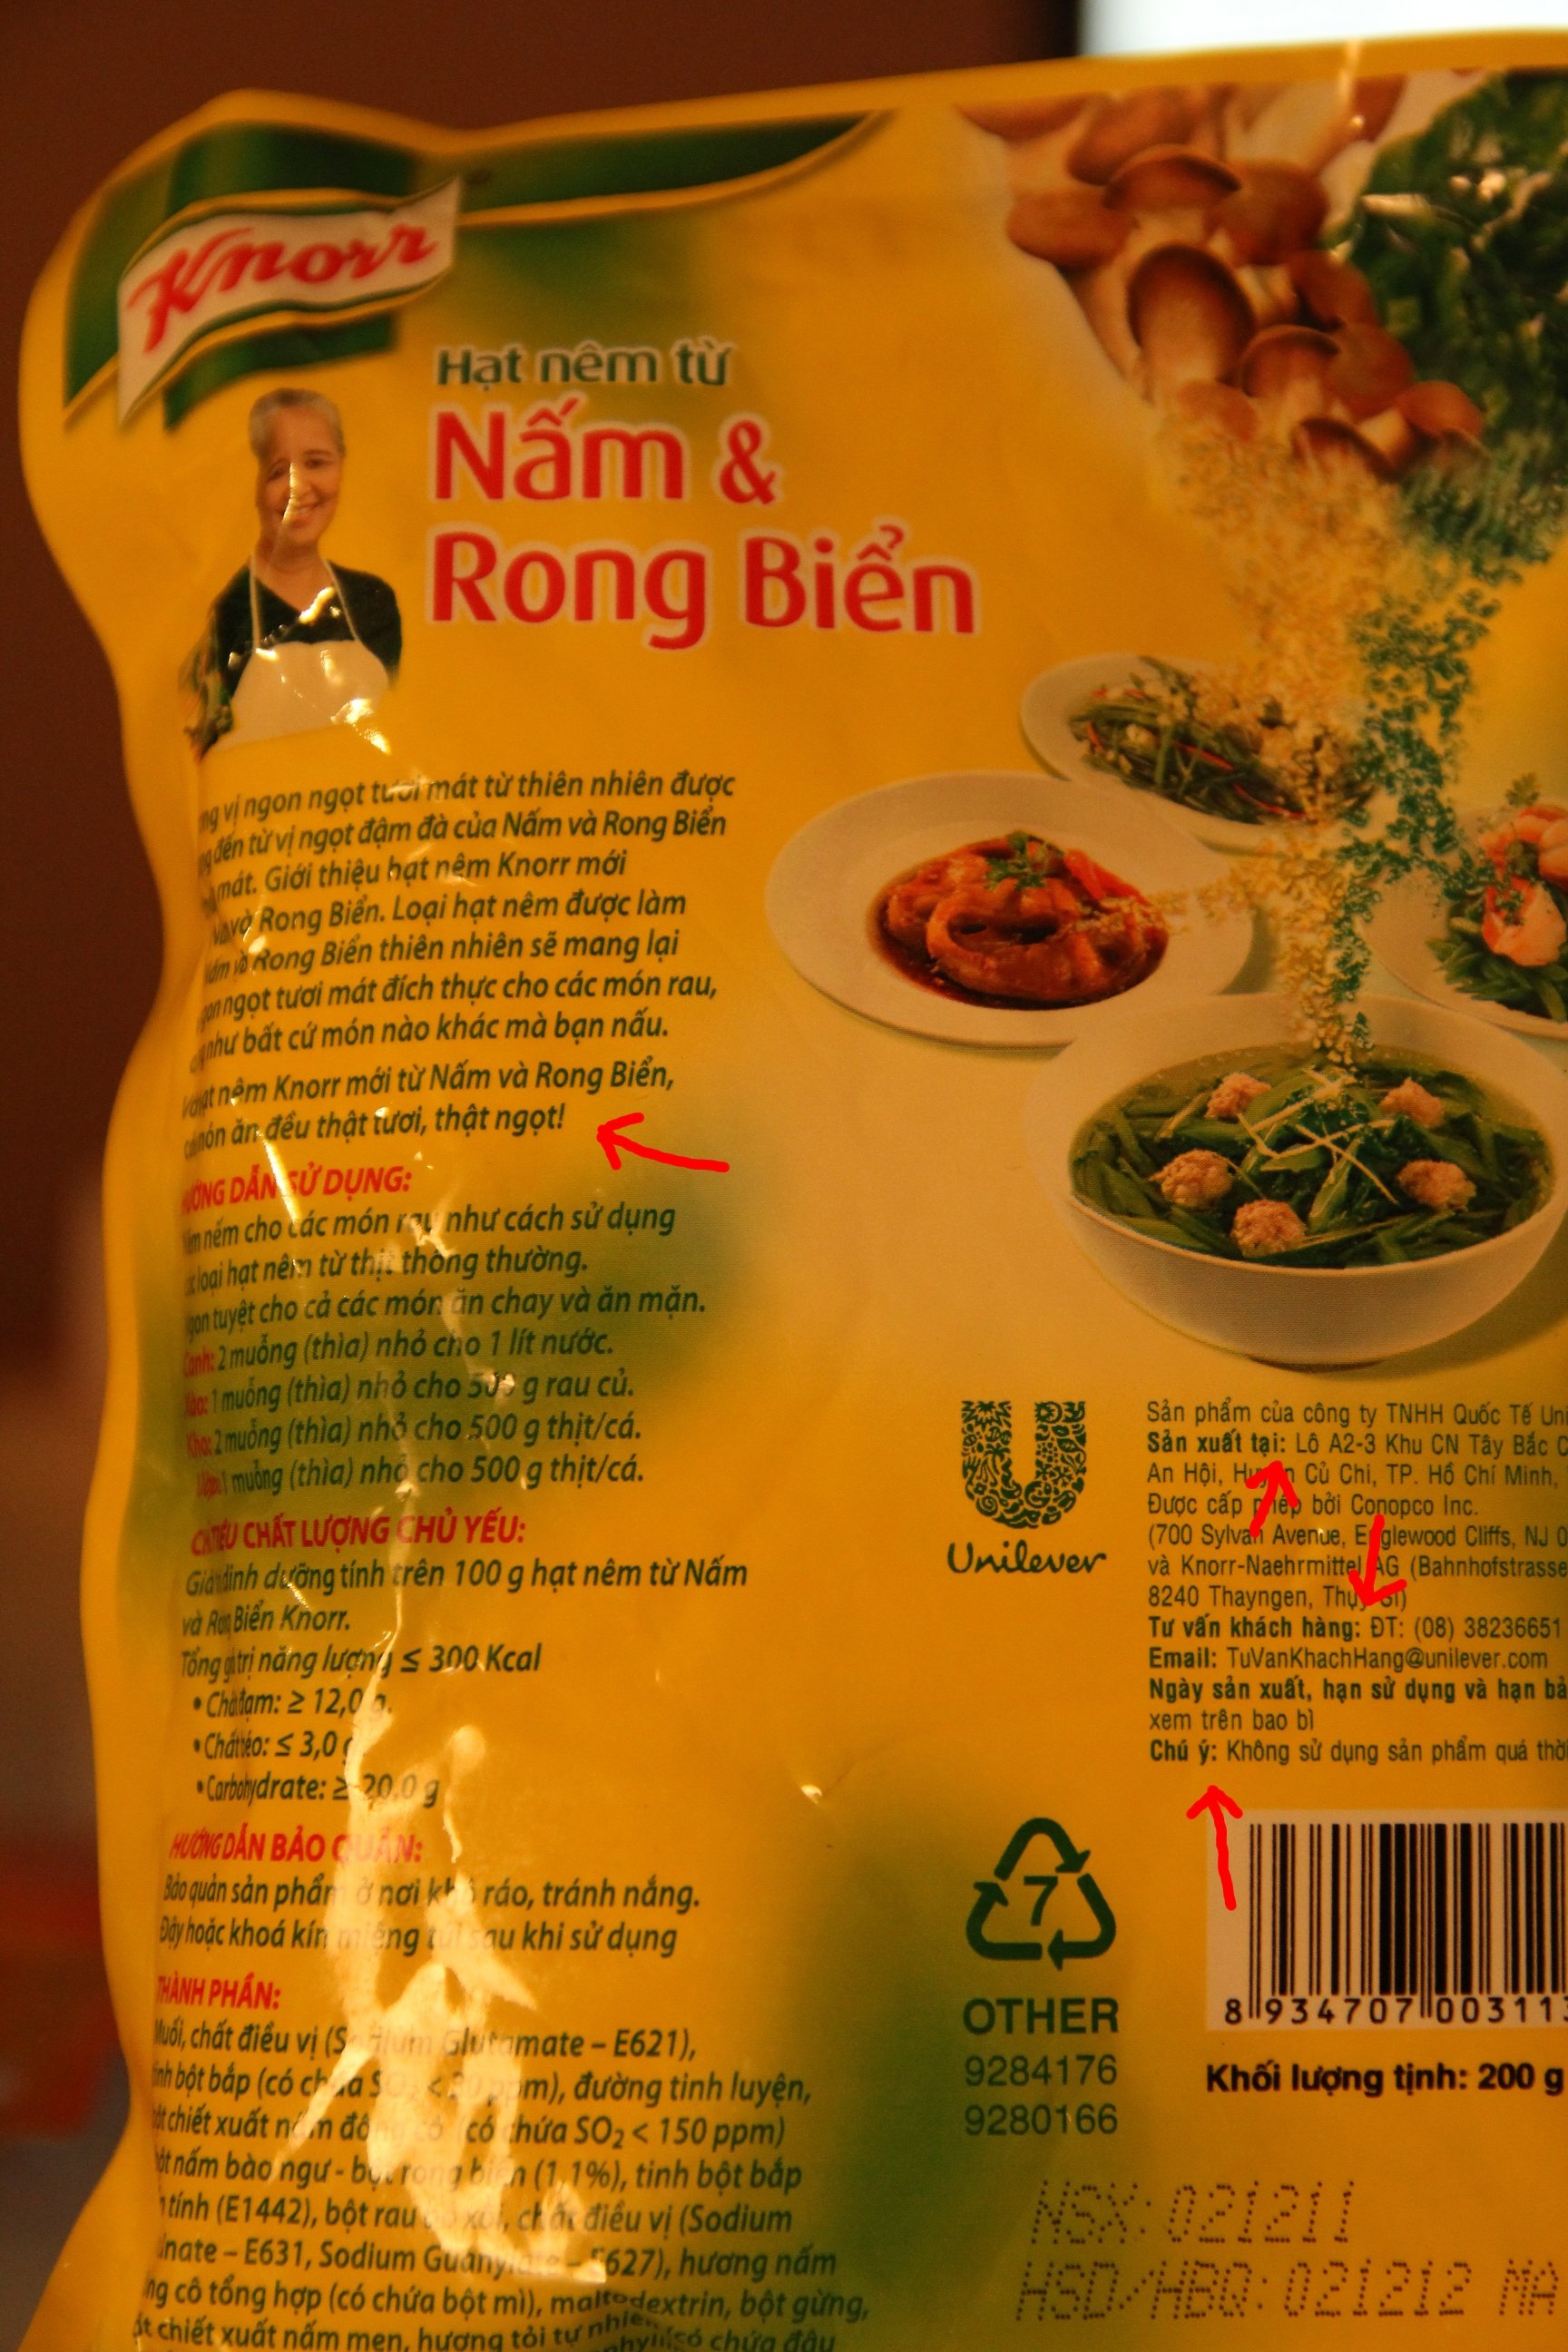 Vietnamese Food - Knorr.jpg